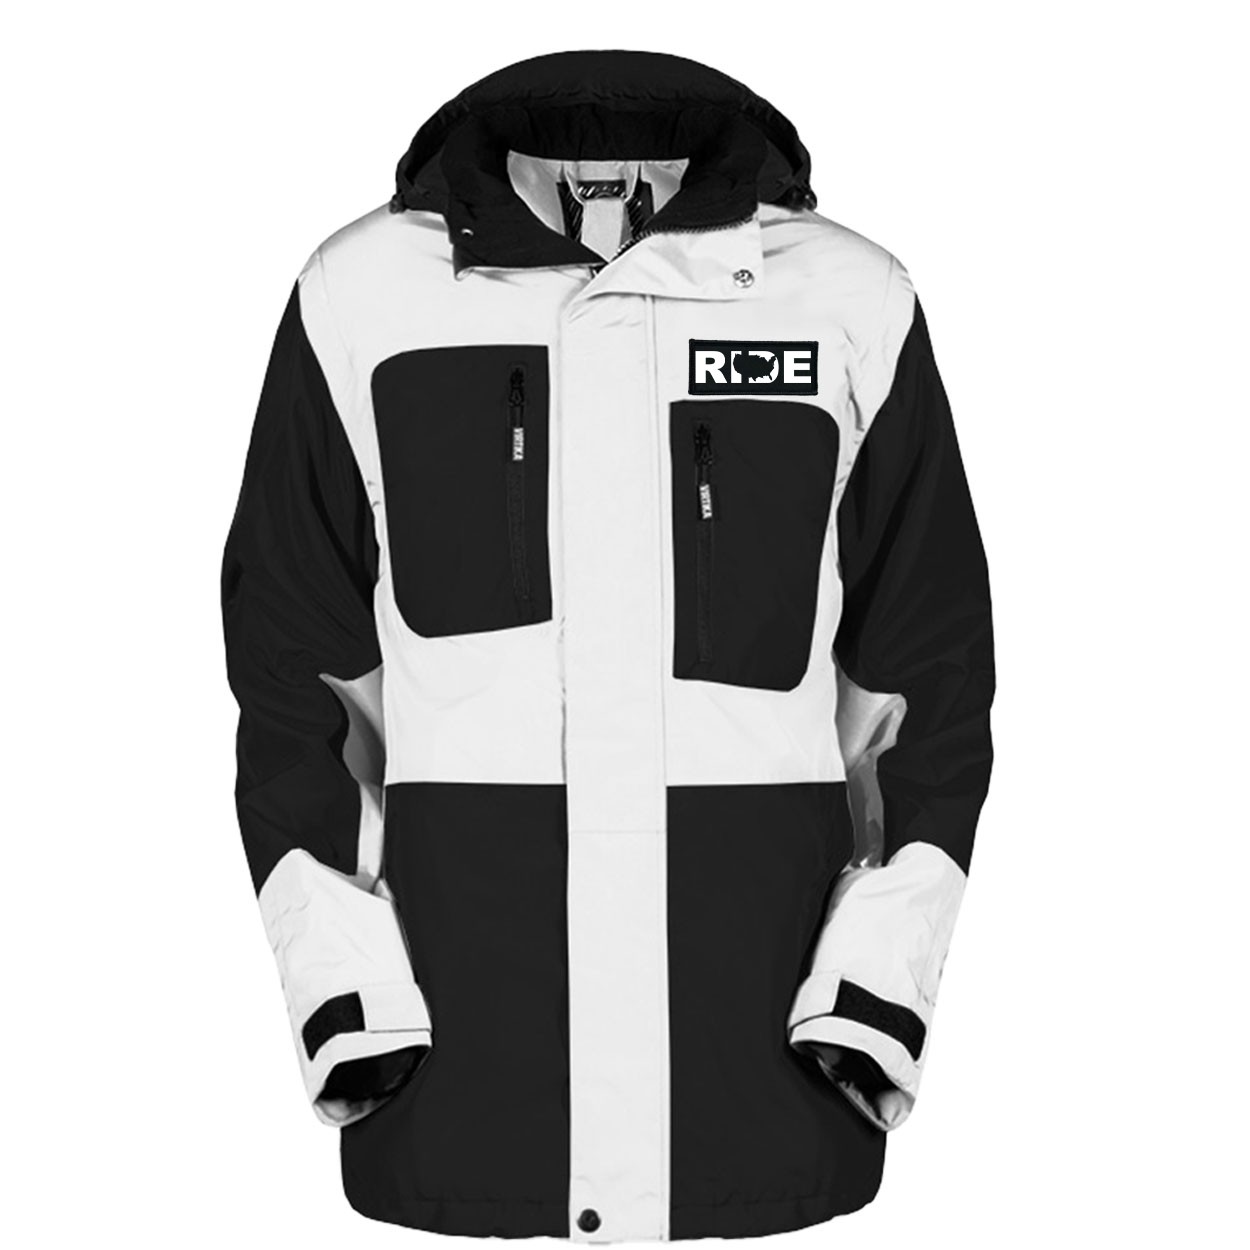 Ride United States Pro Waterproof Breathable Winter Virtika Jacket Black/White (White Logo)